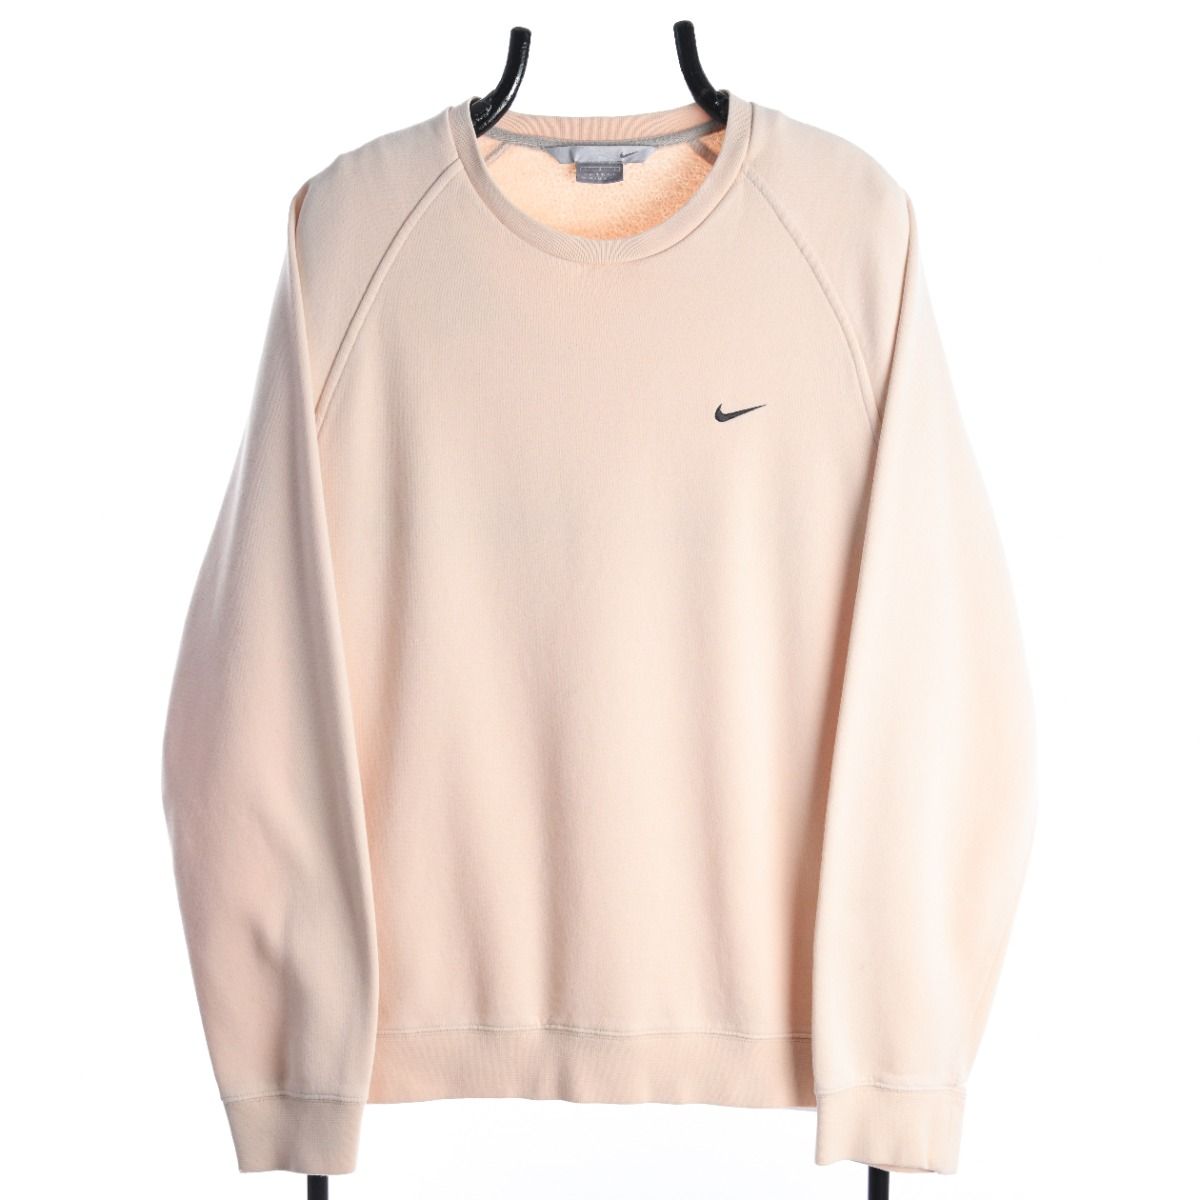 Nike Early 2000s Cream Sweatshirt